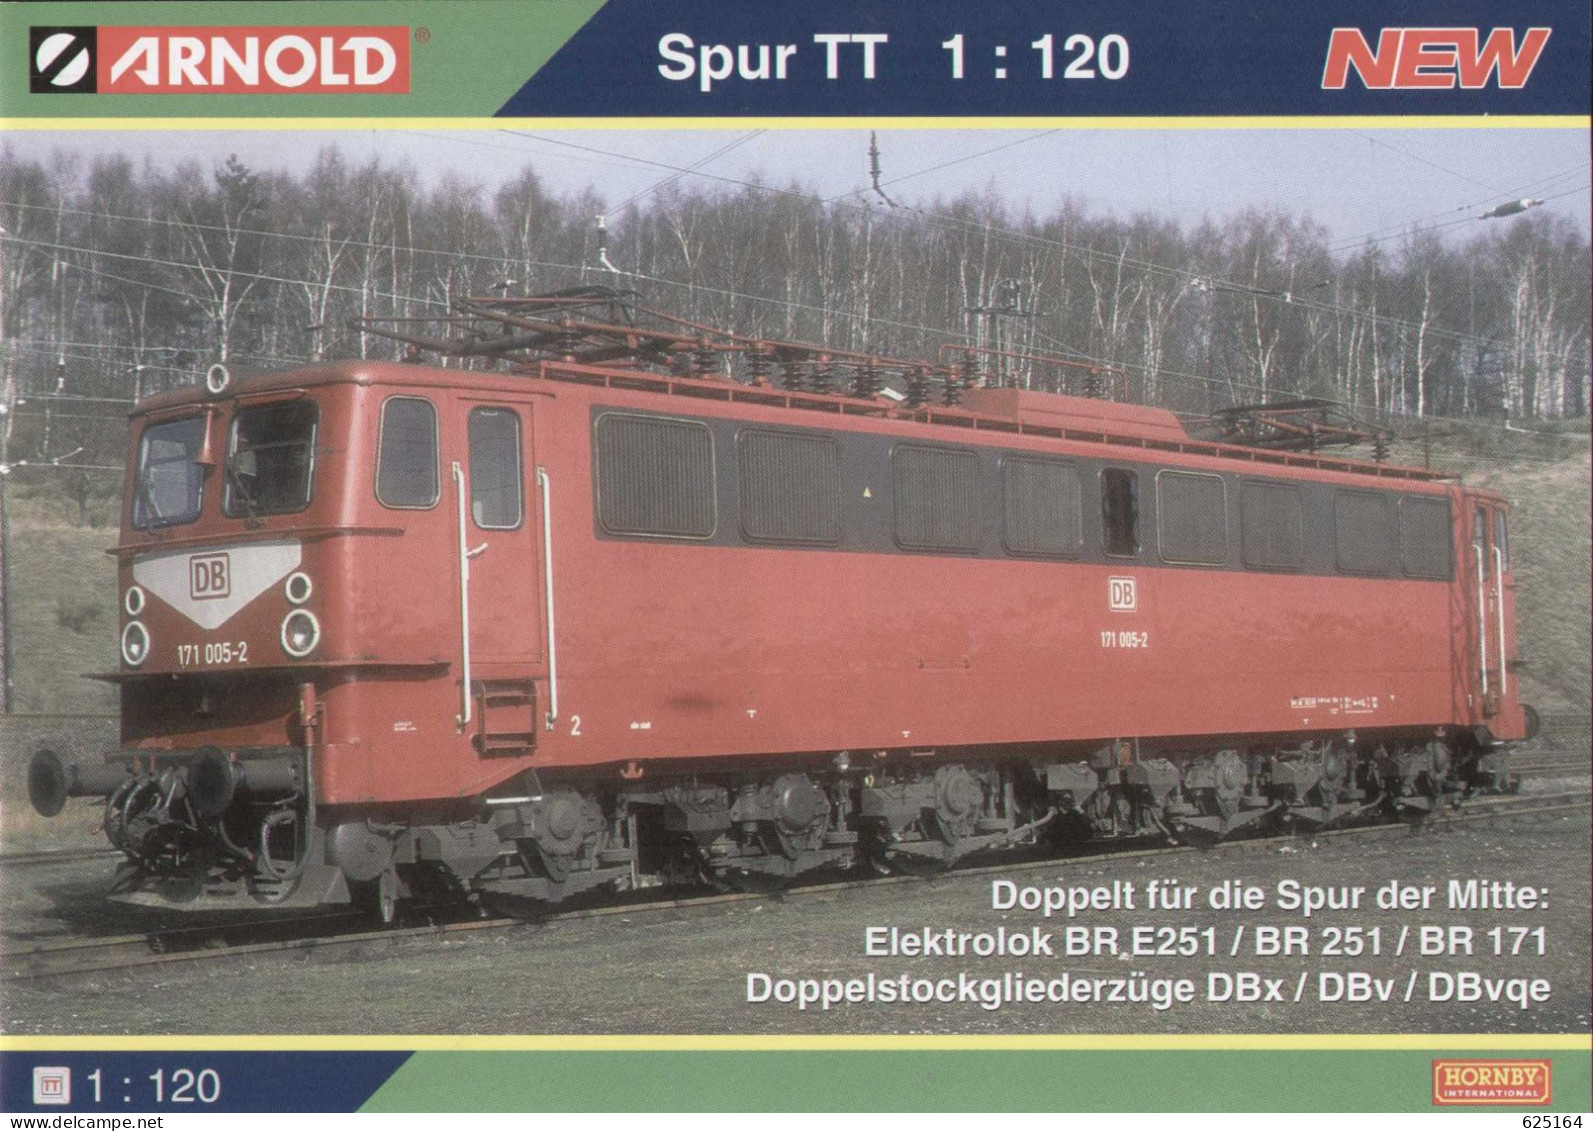 Catalogue ARNOLD Neuheiten 2014 Spur TT 1/120 (Hornby) - Tedesco